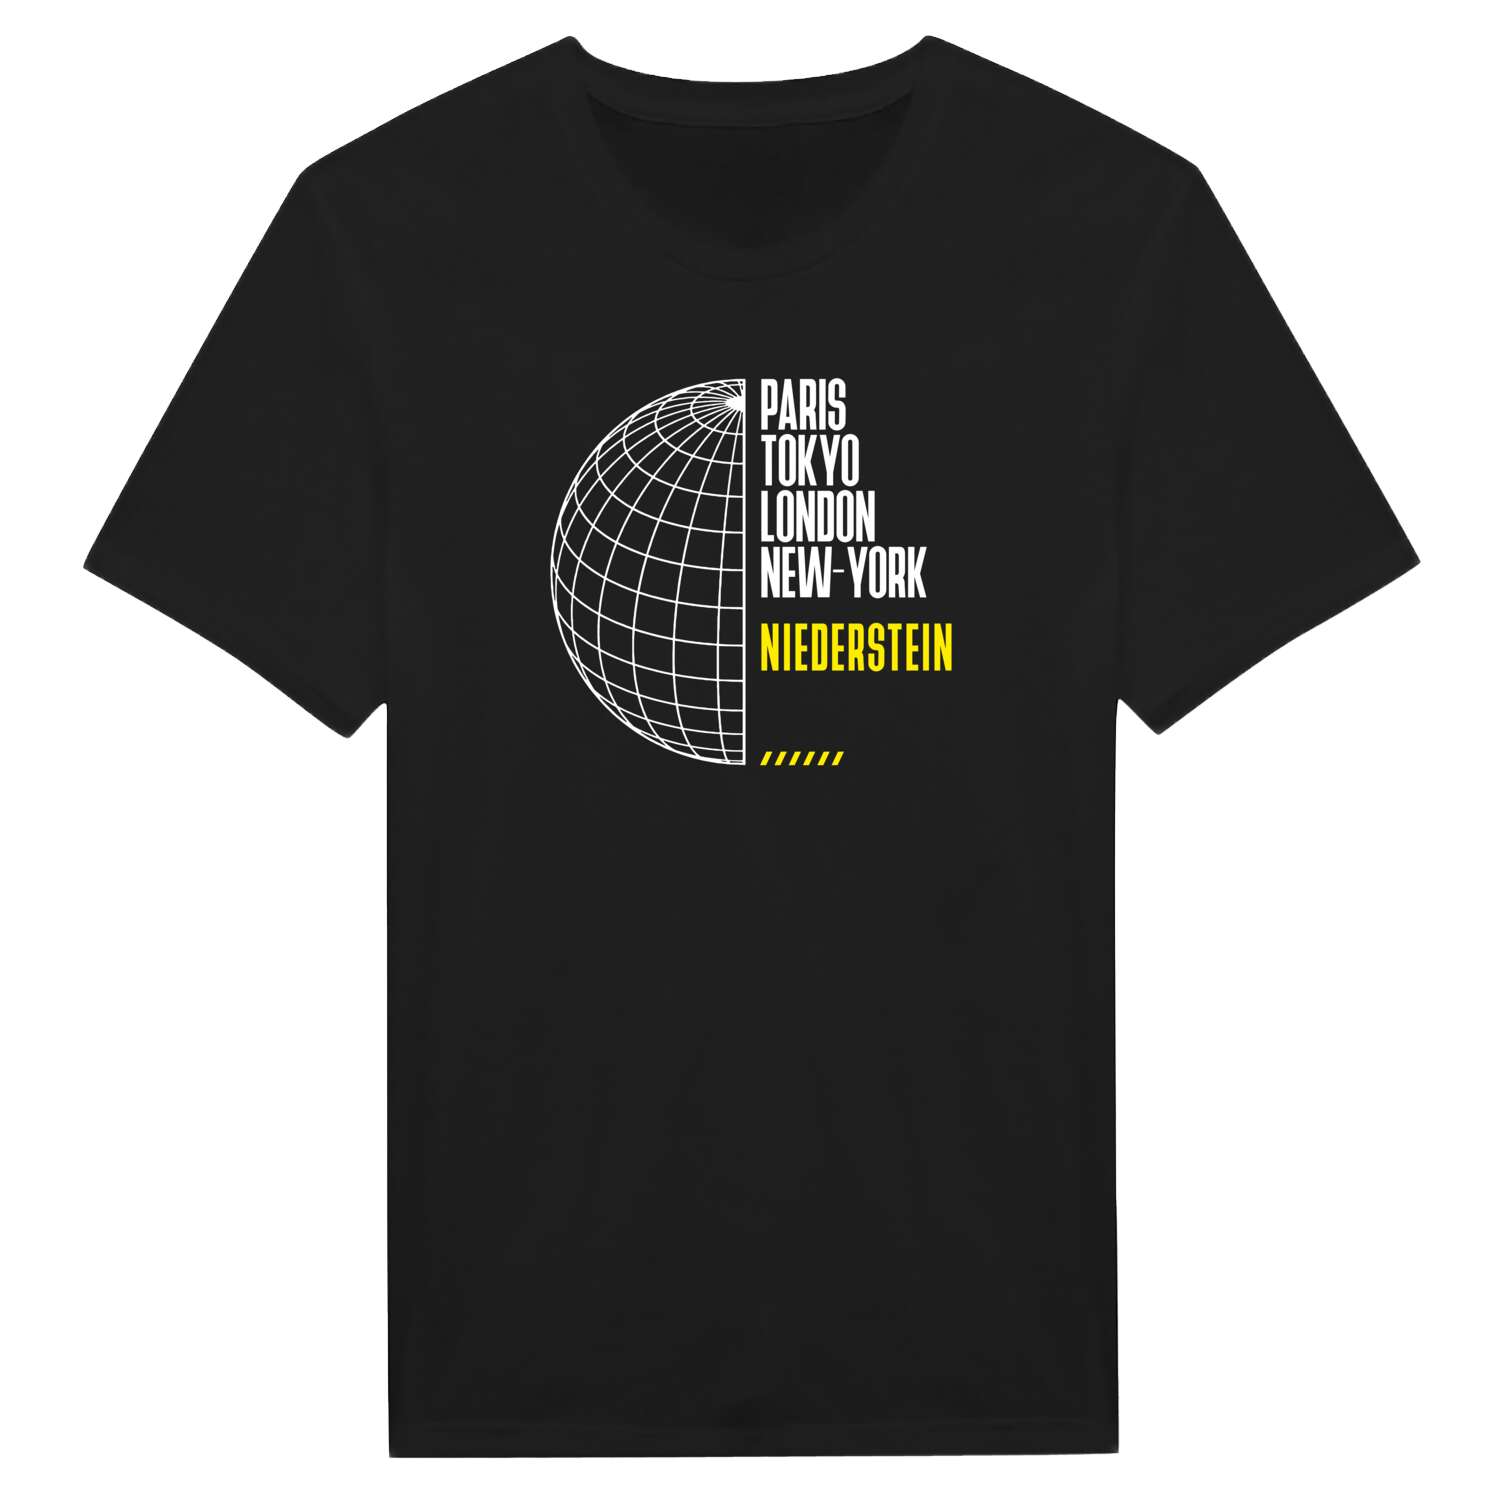 Niederstein T-Shirt »Paris Tokyo London«